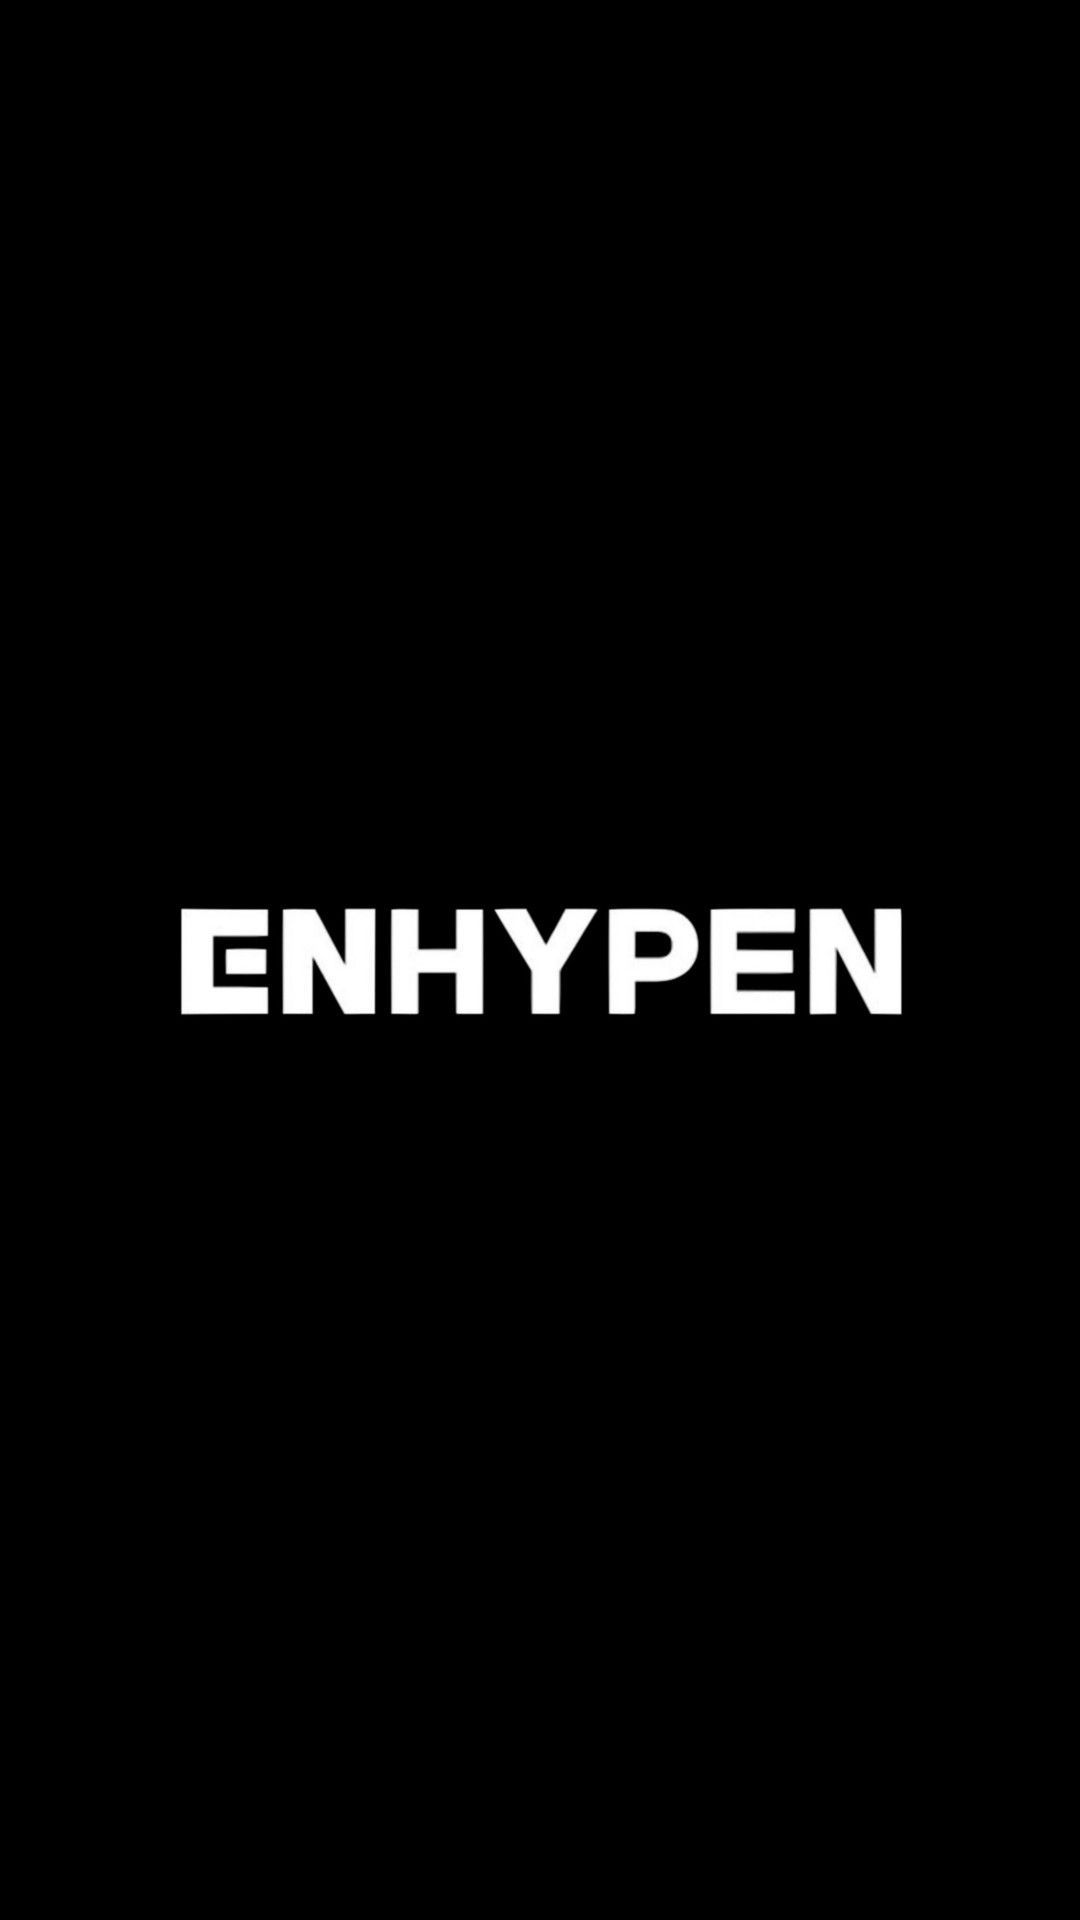 ENHYPEN logo wallpaper. Lagu, Belajar, Kiat belajar